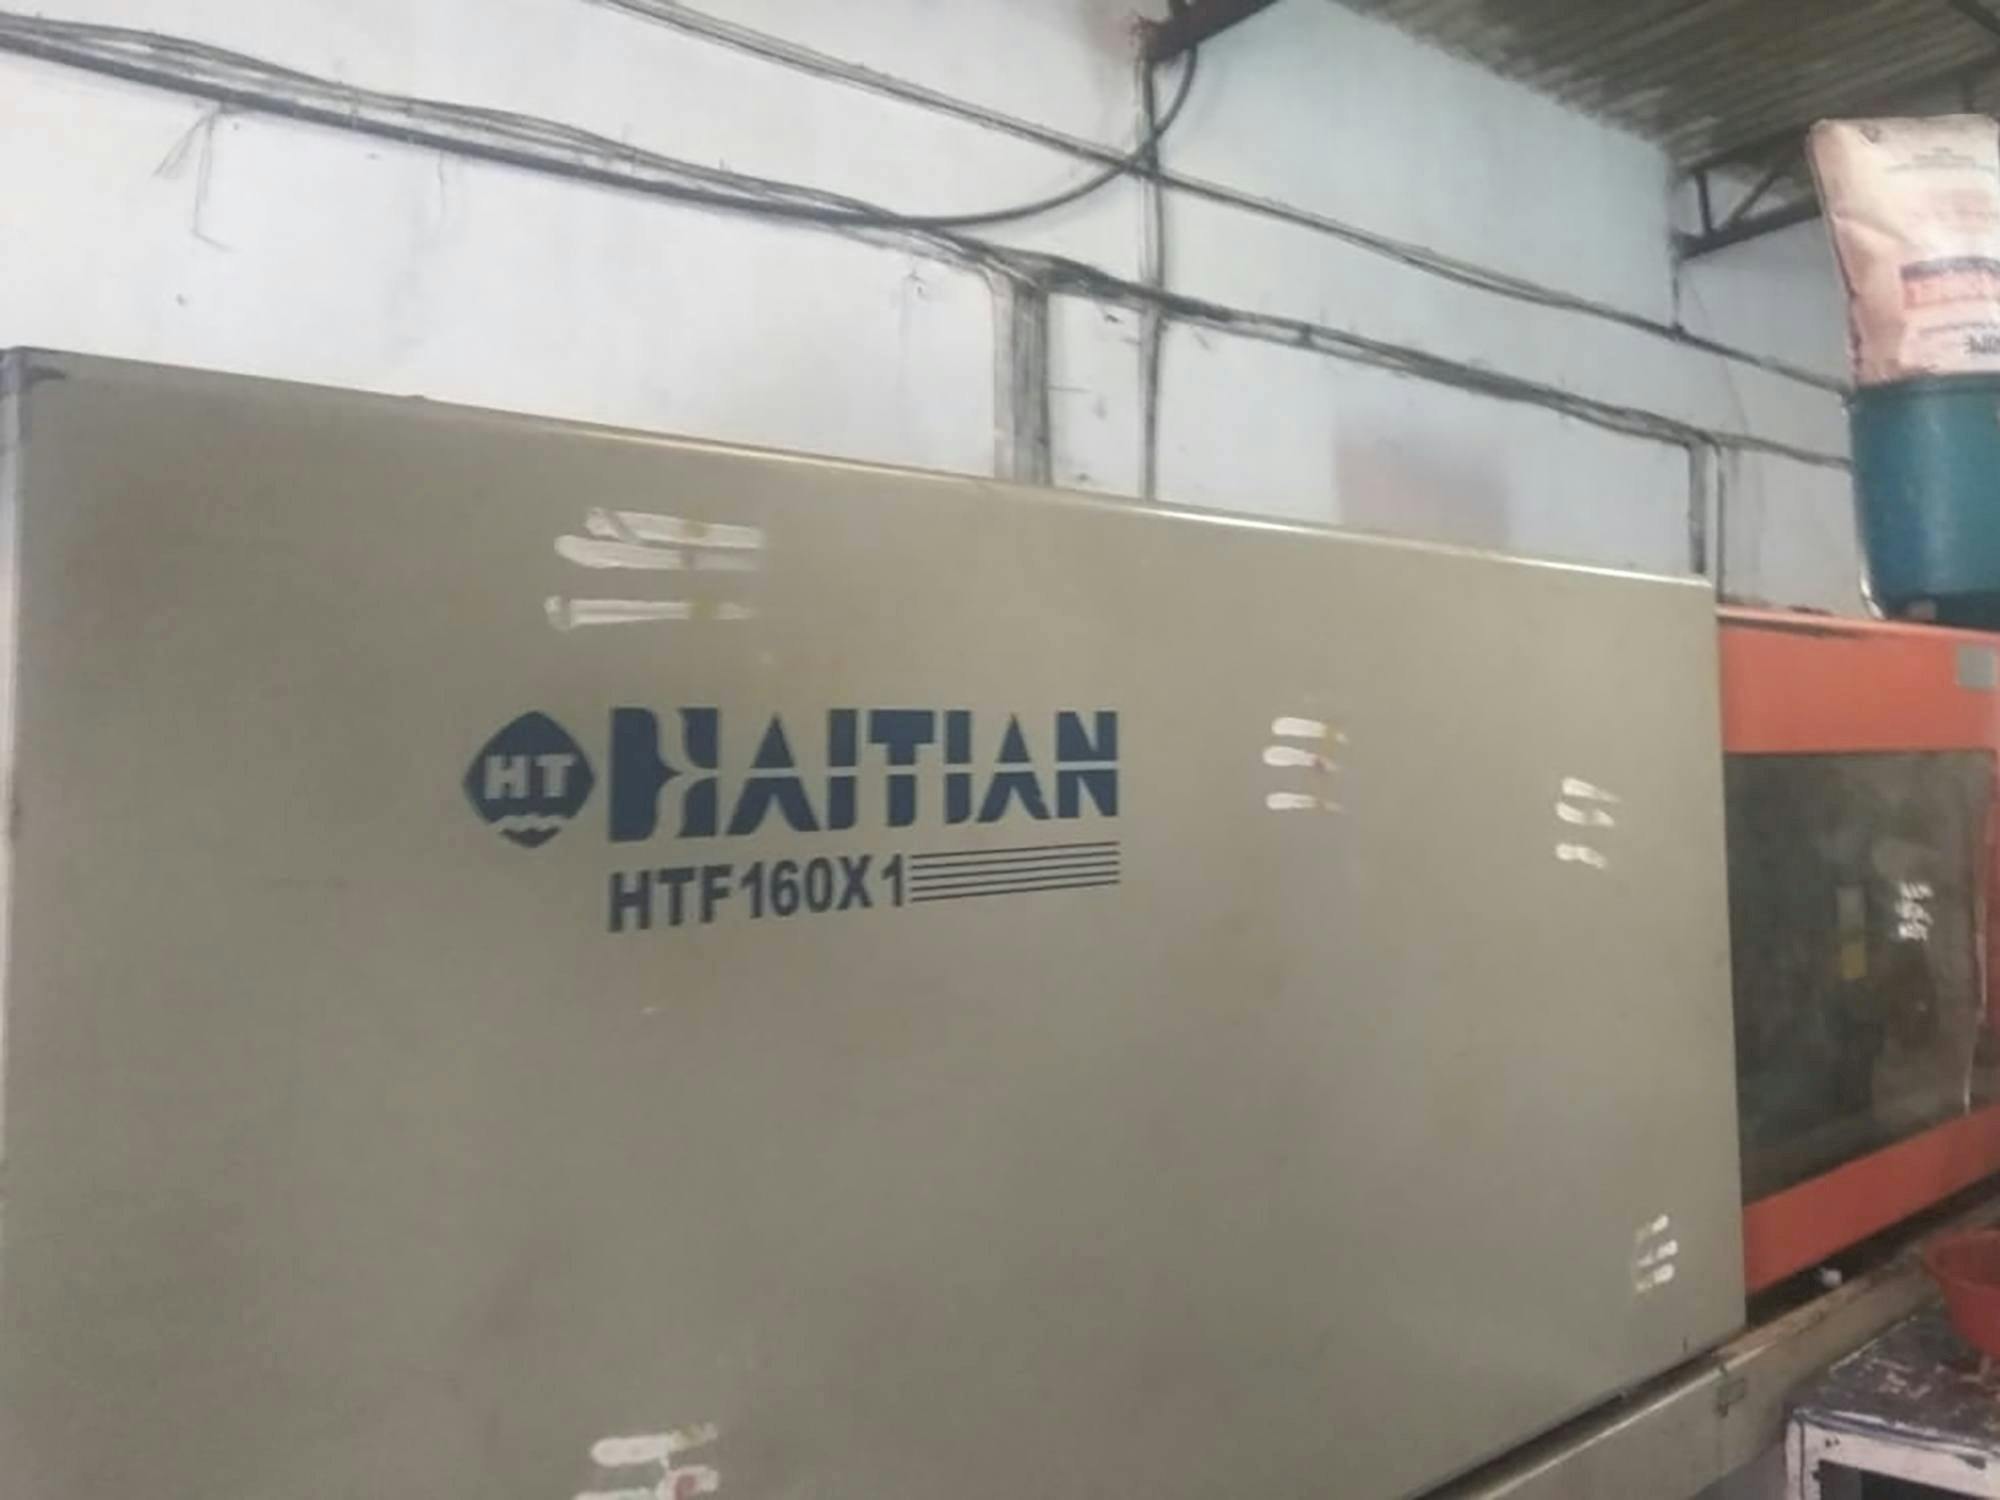 Vista frontal de la máquina HAITIAN HTF160X1